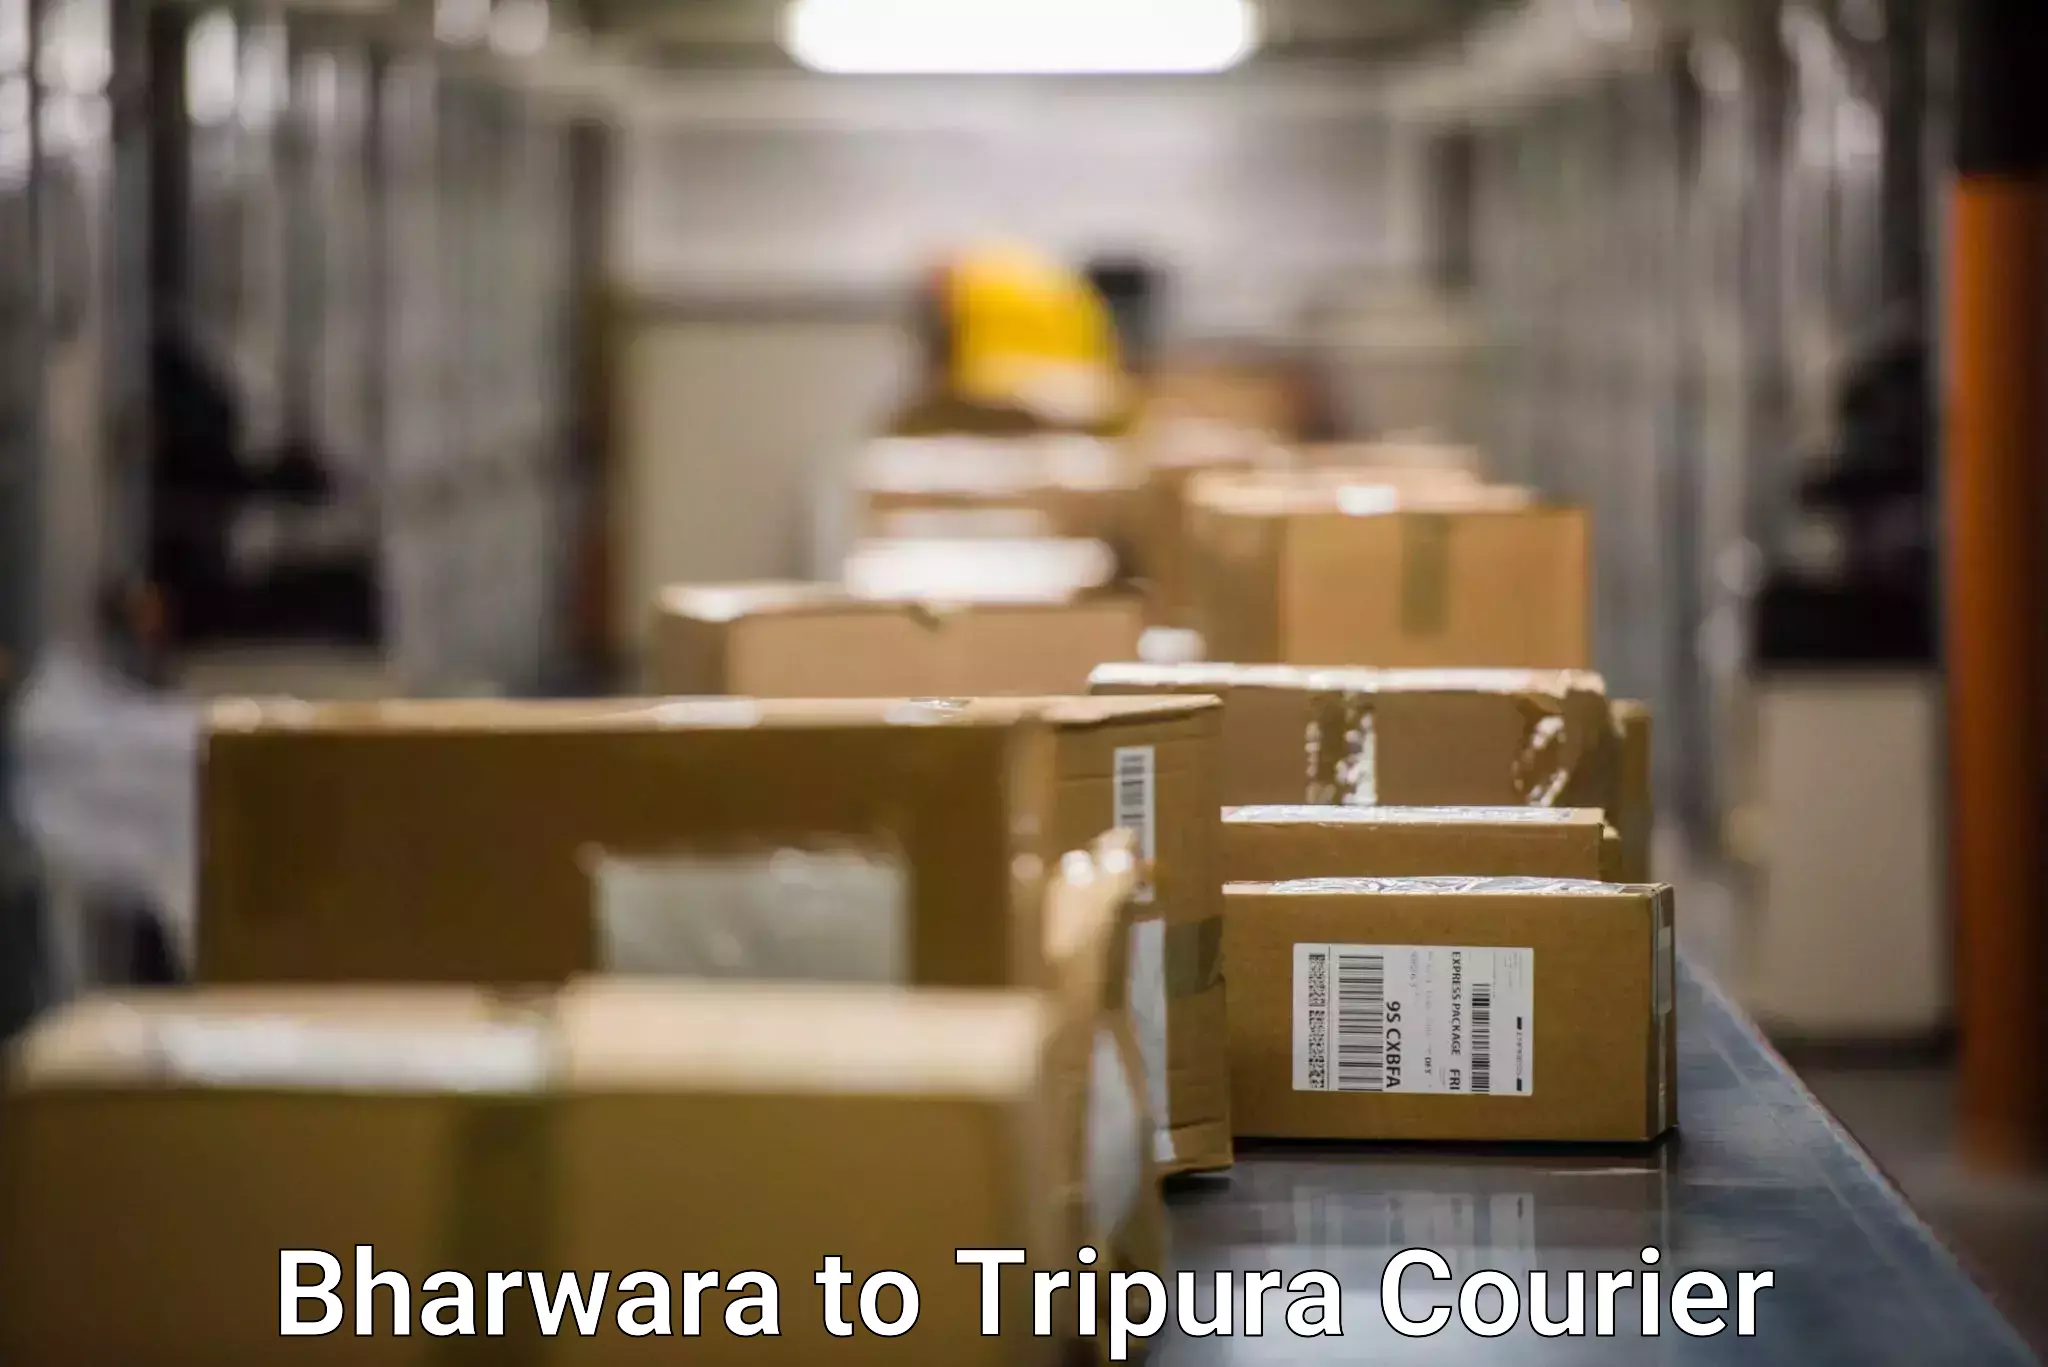 Global logistics network Bharwara to South Tripura